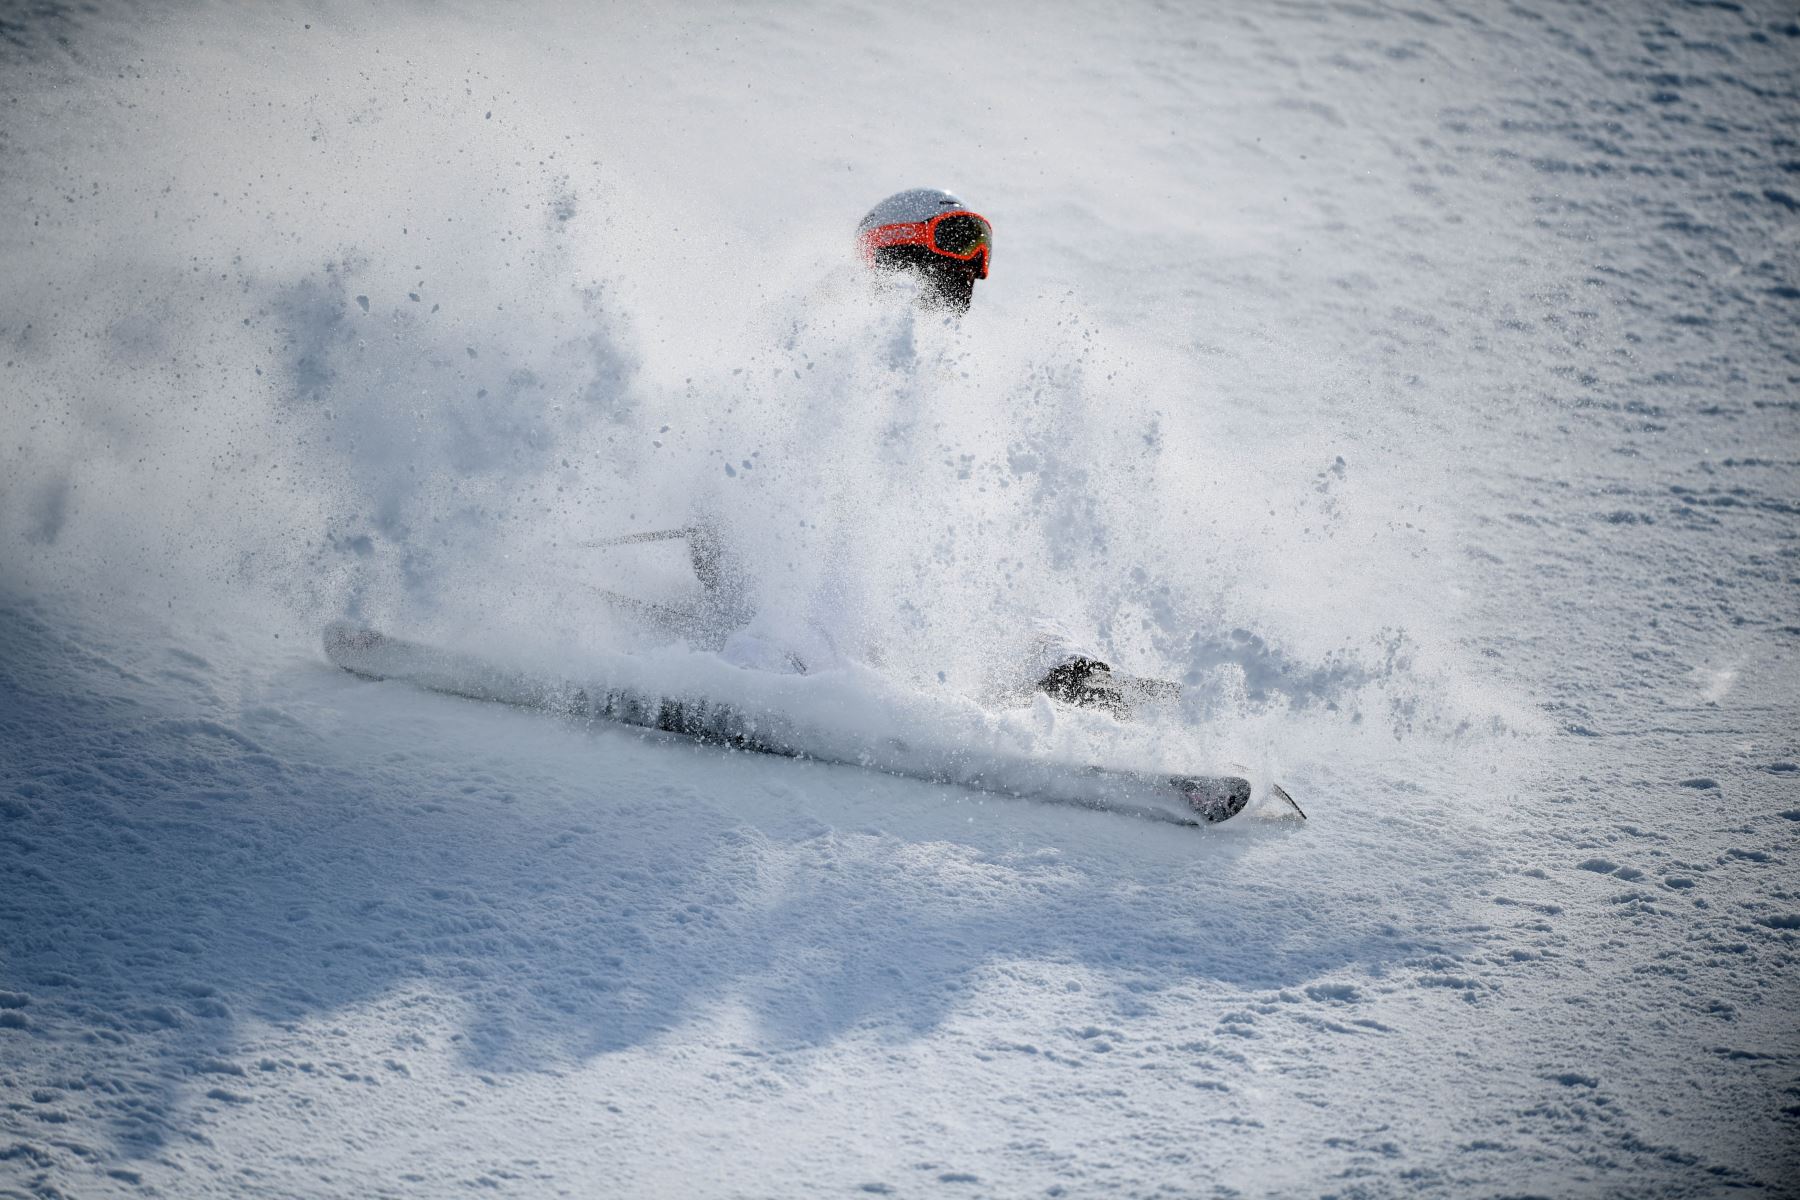 Lukas Muellauer de Austria compite en el evento de calificación de halfpipe de esquí masculino en Pyeongchang 2018. Foto: AFP